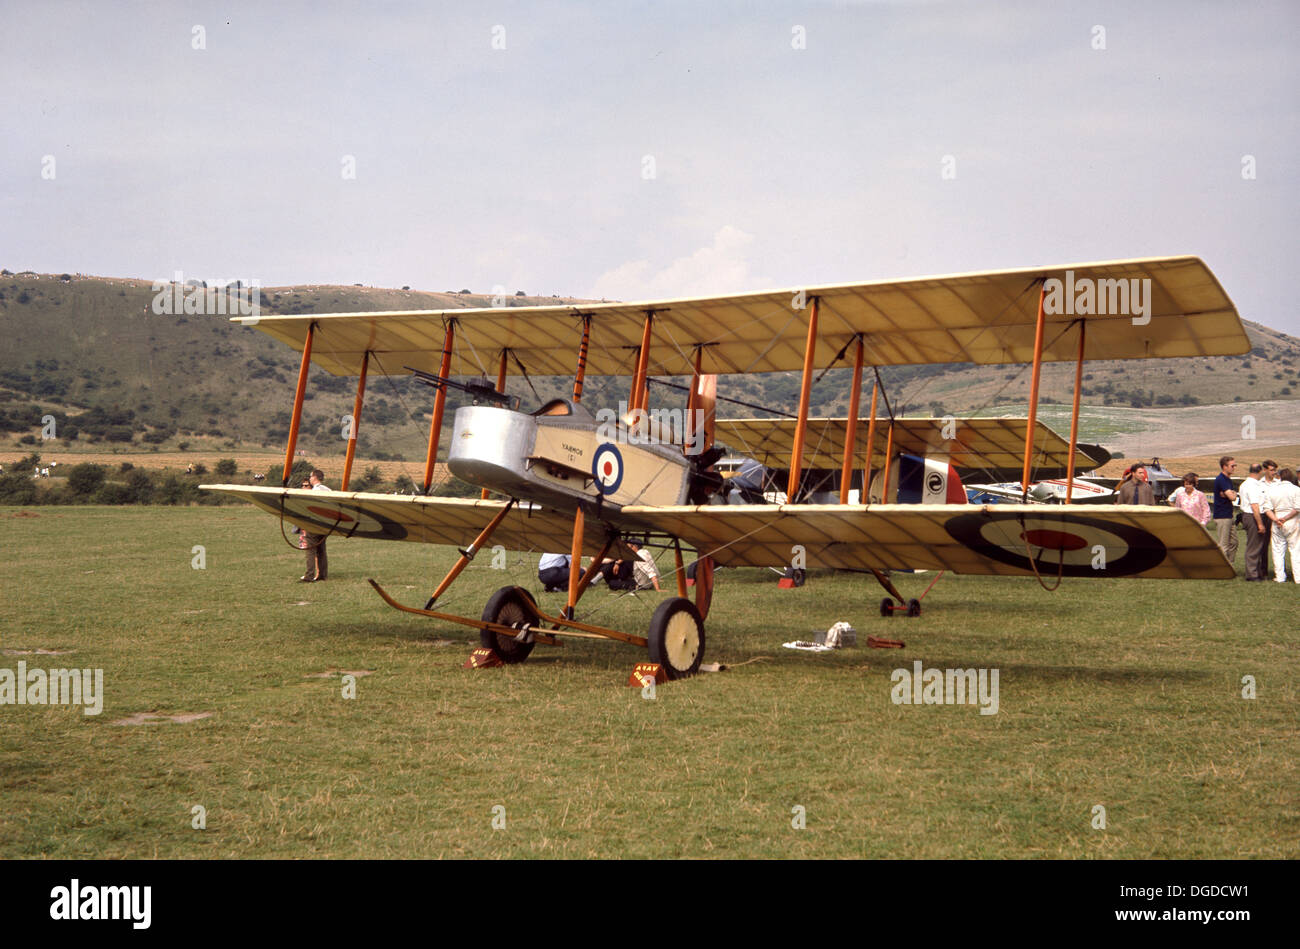 1970 s, Bild von einem restaurierten WW1 RAF-Flügel Doppeldecker stationären Außen auf einer Rasenfläche, England, Grossbritannien, aus der die RAF roundel auf dem Flügel und Körper. In den frühen Jahren der Luftfahrt, die meisten Flugzeuge der Doppeldecker zwei Flügel, die bekanntesten sind die "Flyer", das erste Flugzeug zu fliegen. Stockfoto